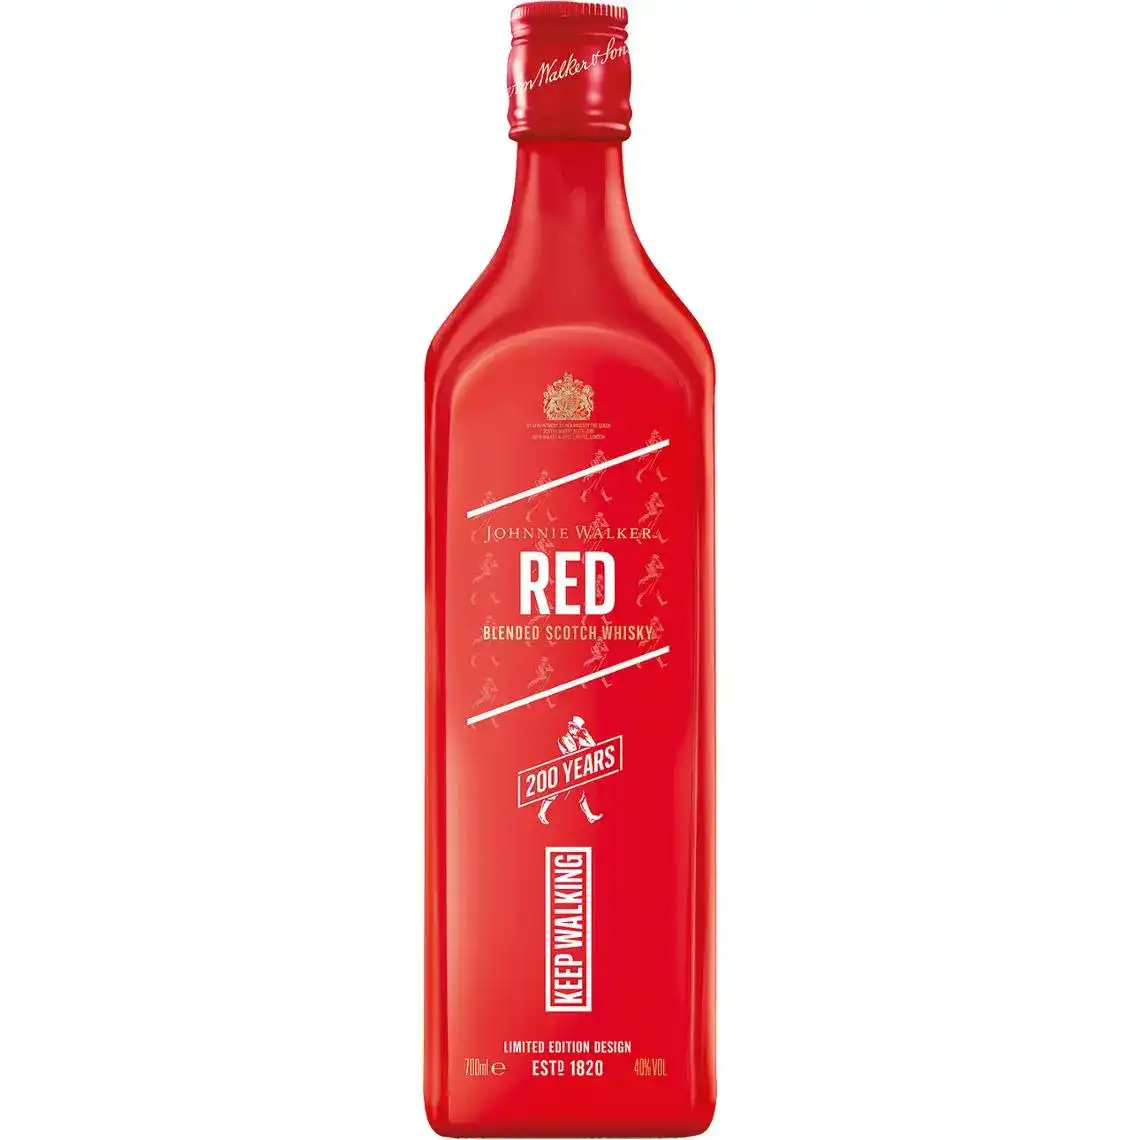 Віскі Johnnie Walker Red Label Icon купажований 4 роки витримки 40% 0.7 л